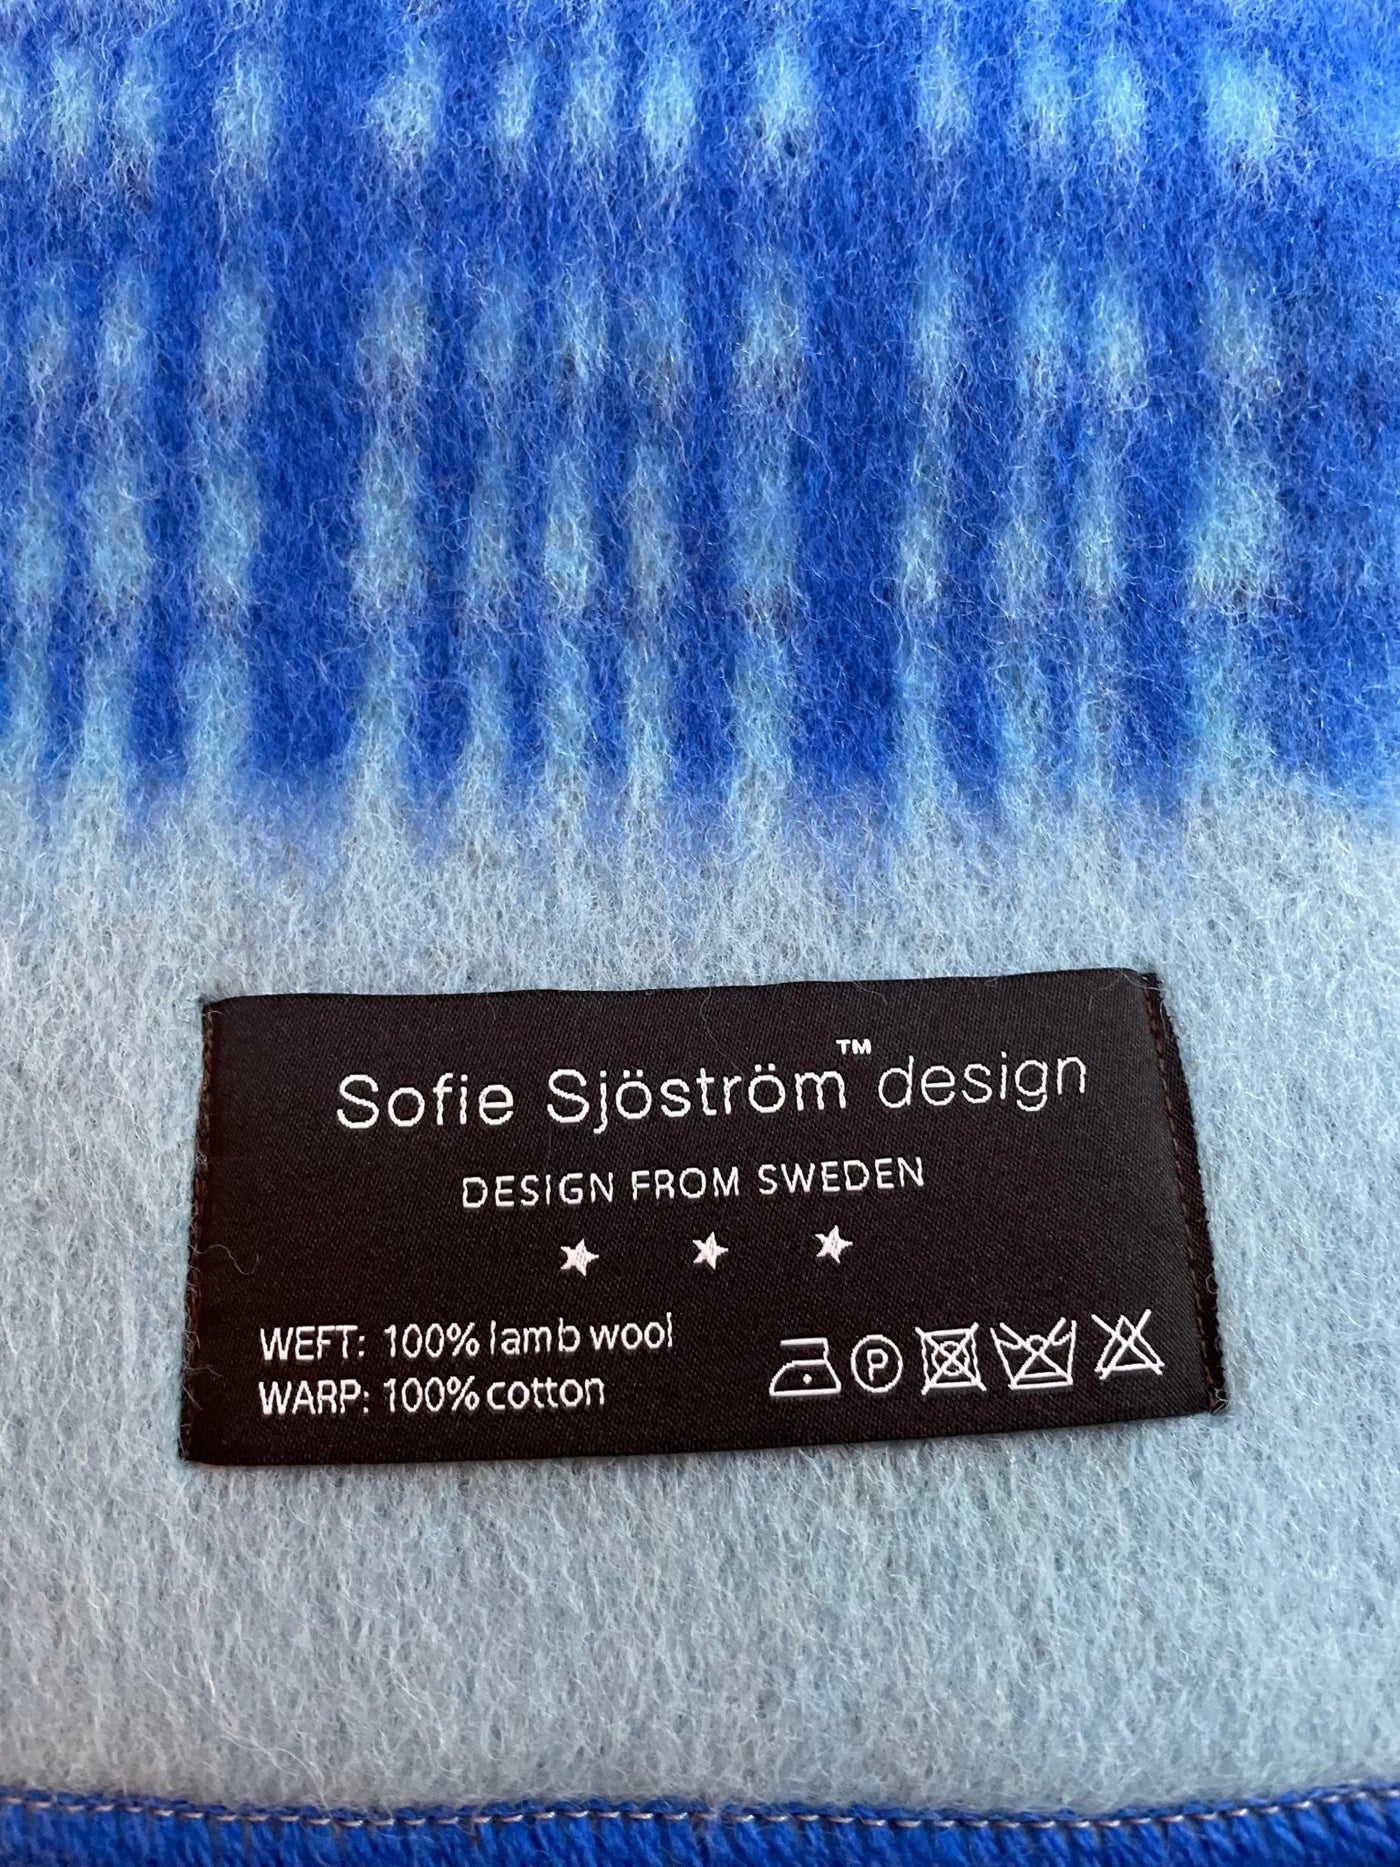 Sofie Sjöström Design Schweden Darling Walk-Tagesdecke aus Lammwolle wahlweise Crem/Beige, Gelb/Senf & Blau/Hellblau ca. L205xW150cmxD0.8cm Gewicht ca. 2kg - Bitangel RENOVATE & FURNISH HOMES GmbH